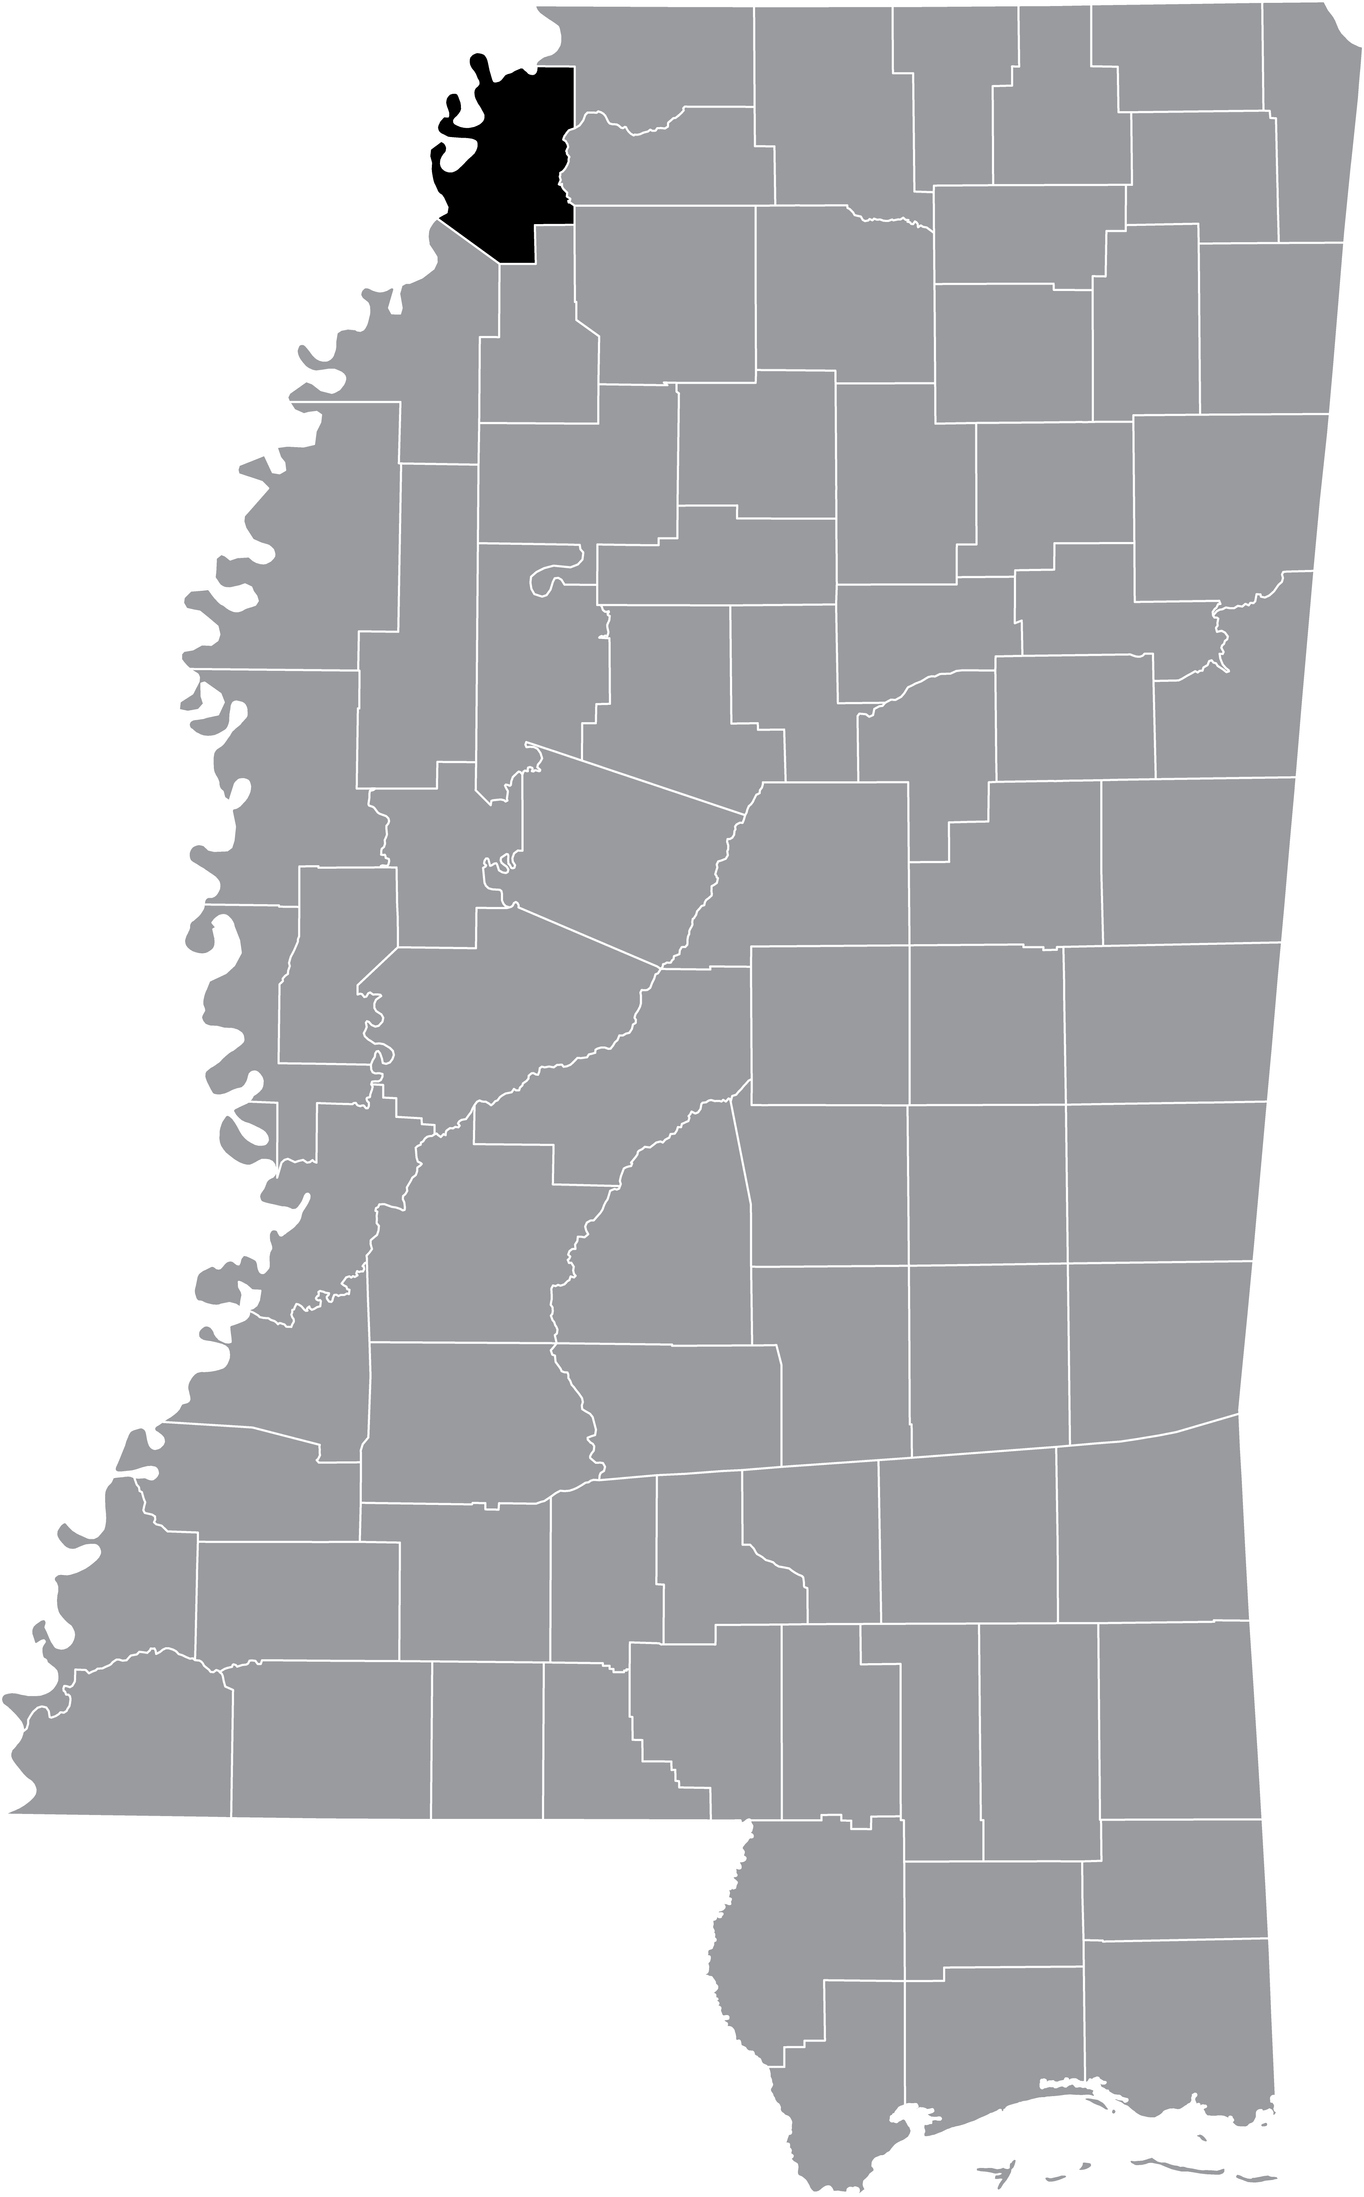 Mappa con la posizione della contea di Tunica del Mississippi, USA